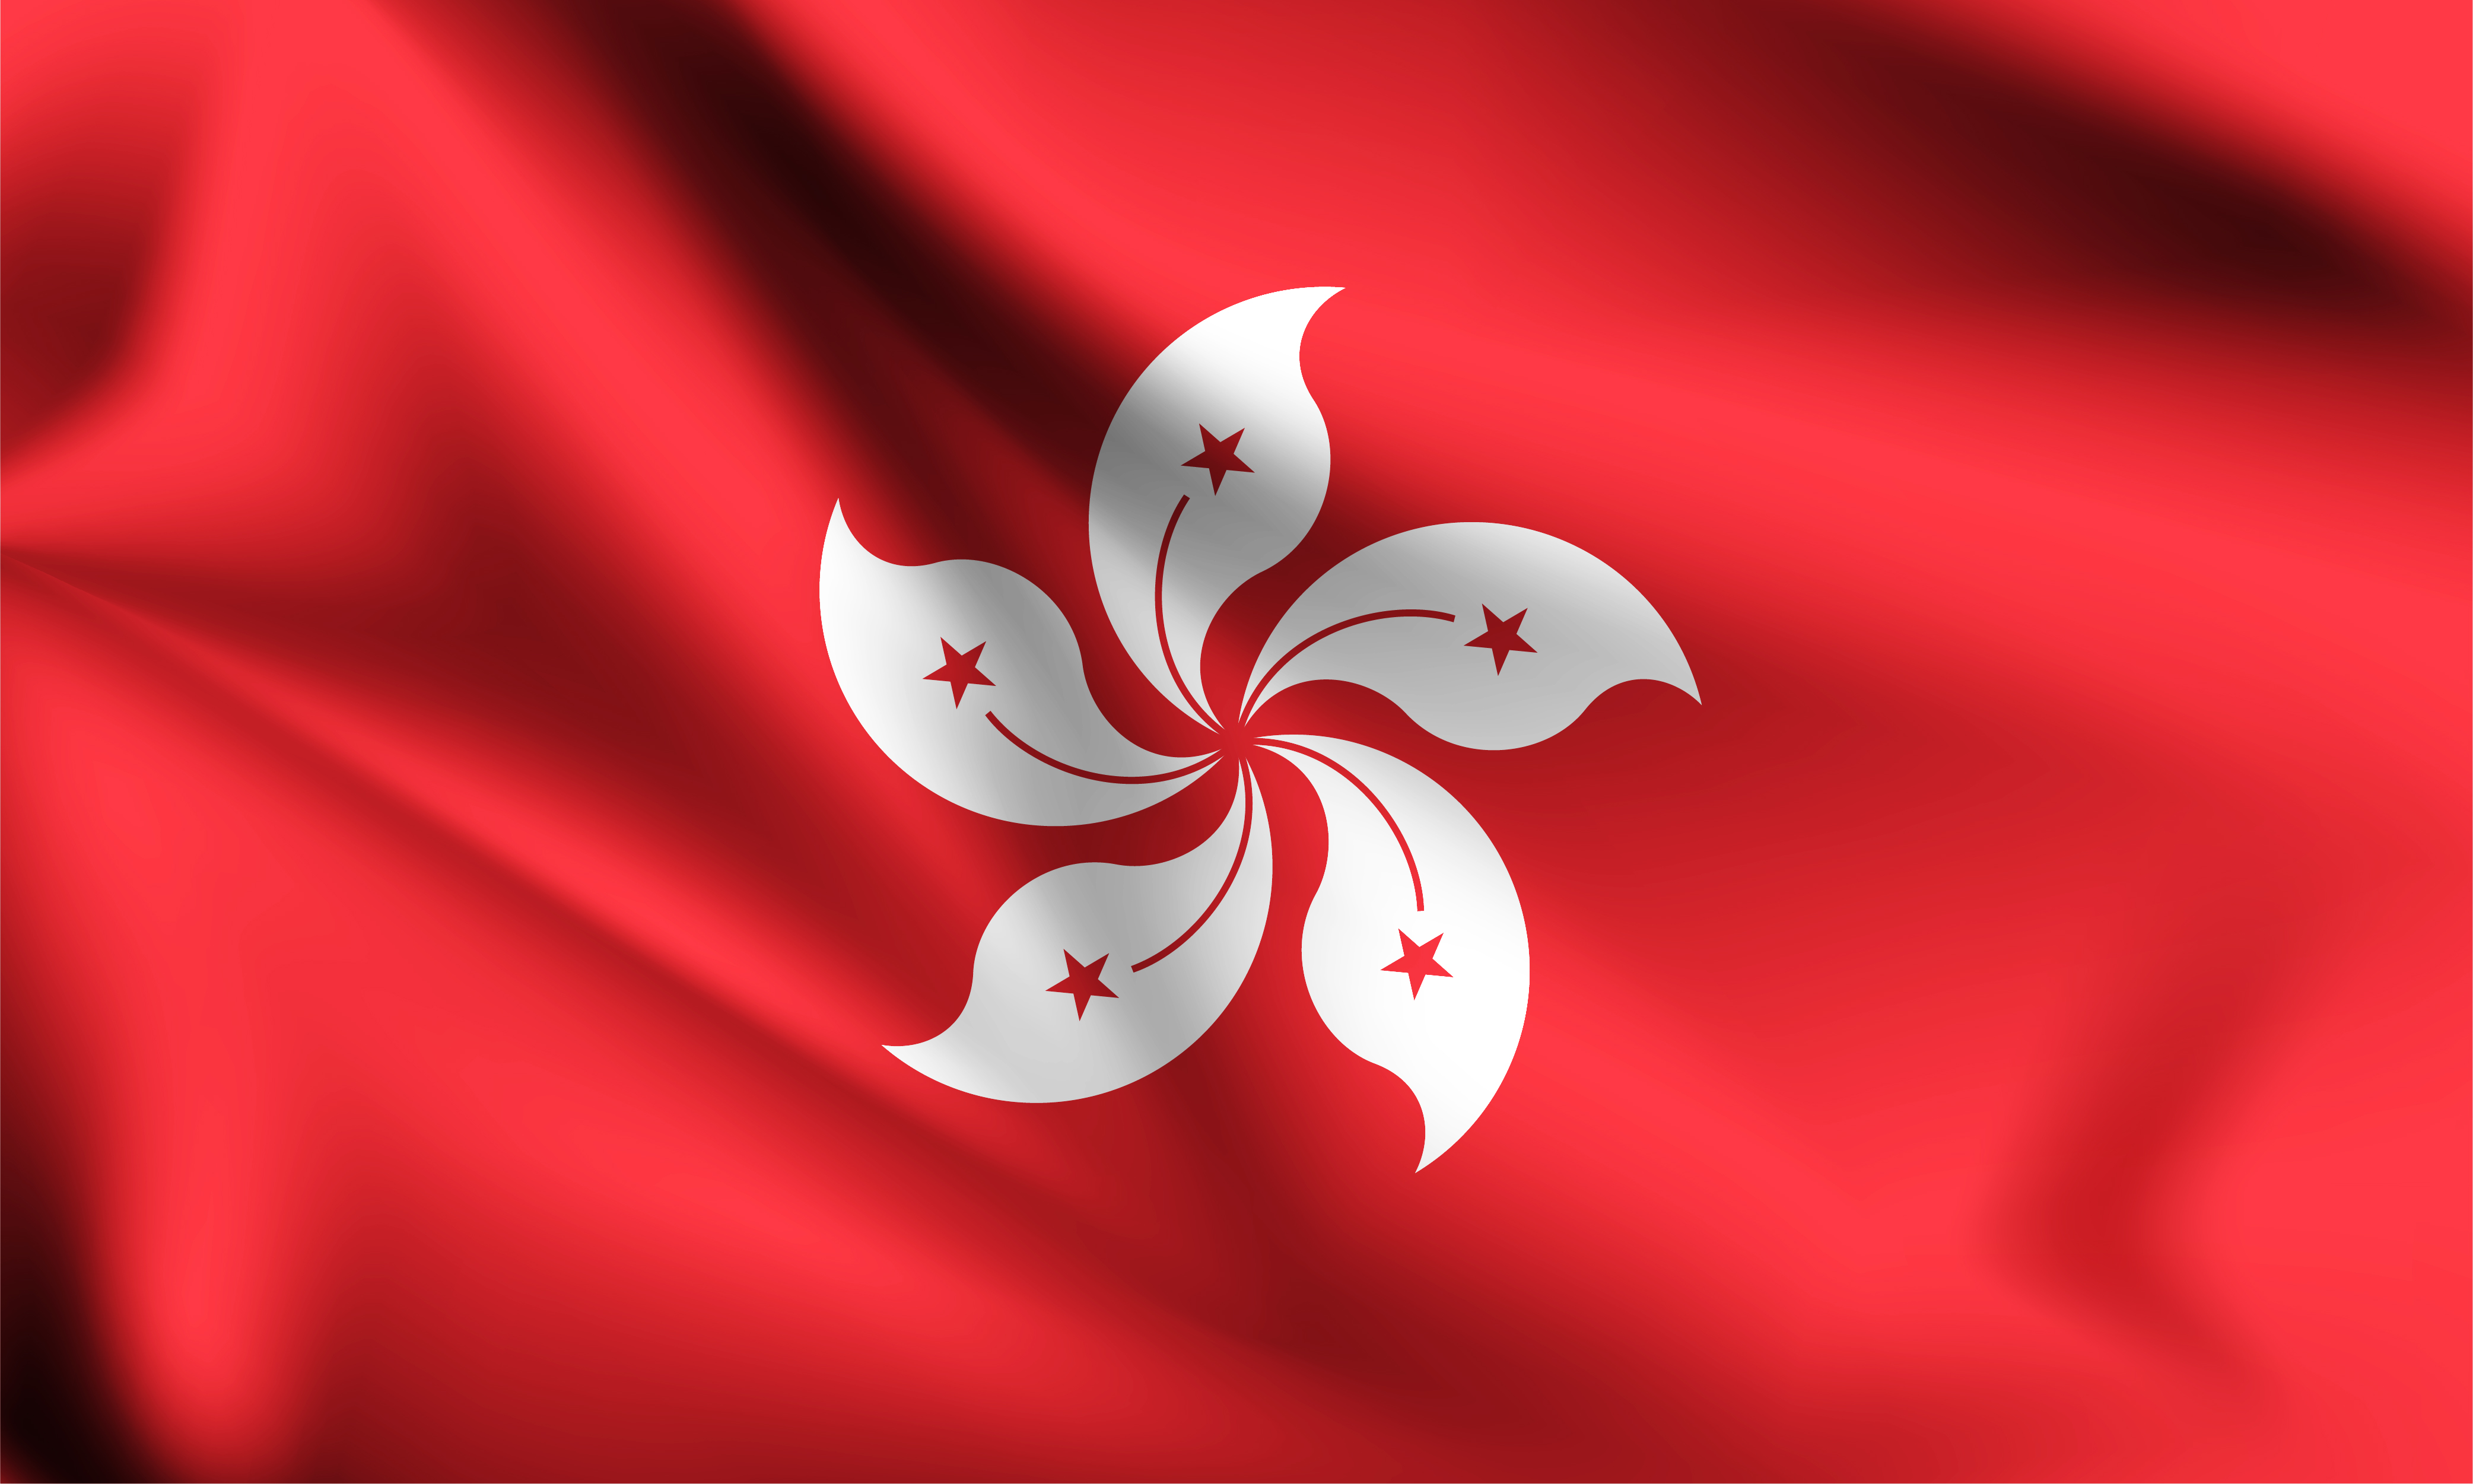 香港区旗国旗与区旗同时升起_图片_互动百科